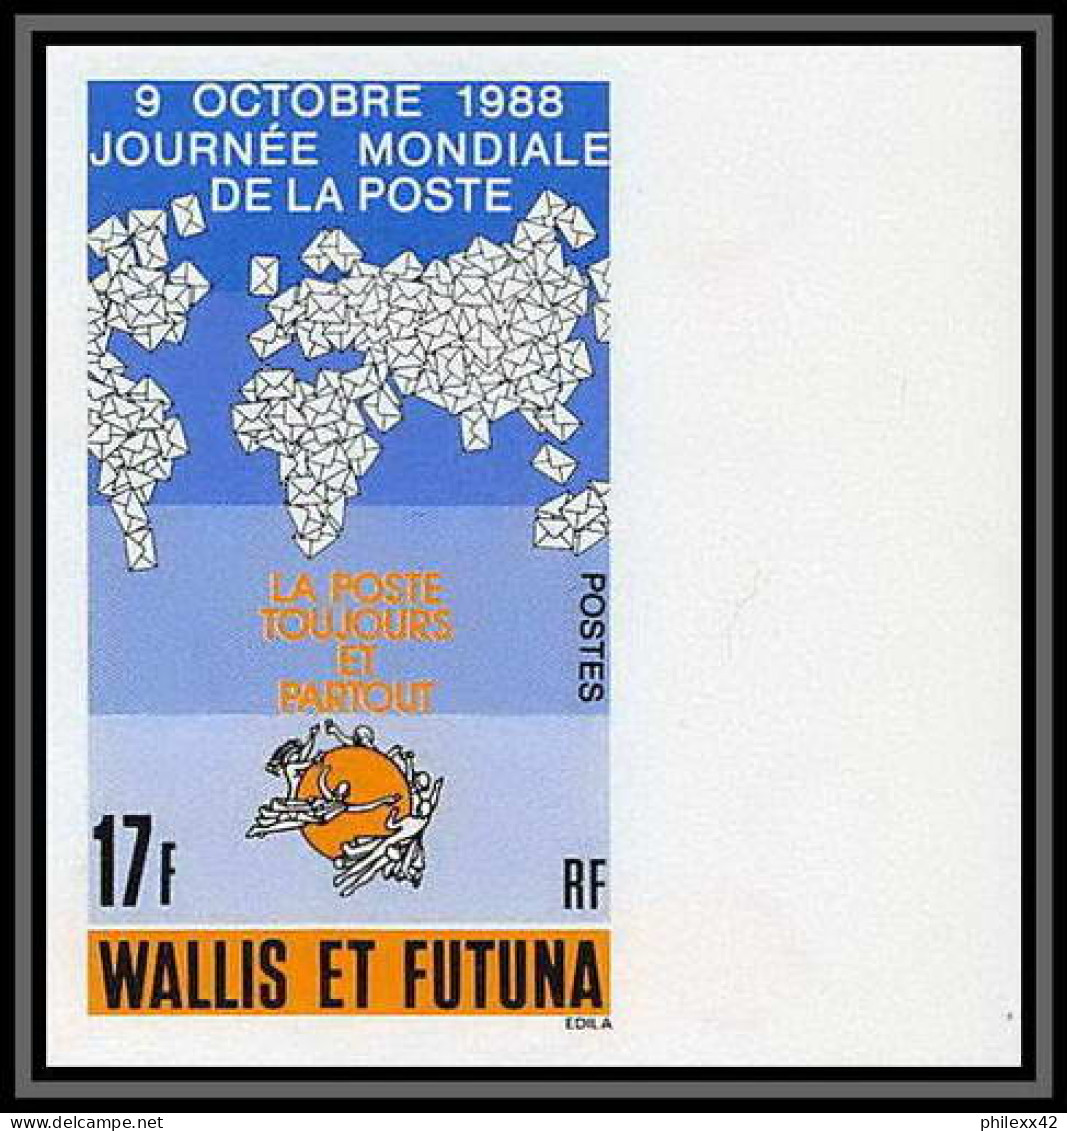 92549a Wallis Et Futuna N°382 UPU Journée Mondiale De La Poste 1988 World Post Day Non Dentelé Imperf ** MNH - Non Dentelés, épreuves & Variétés